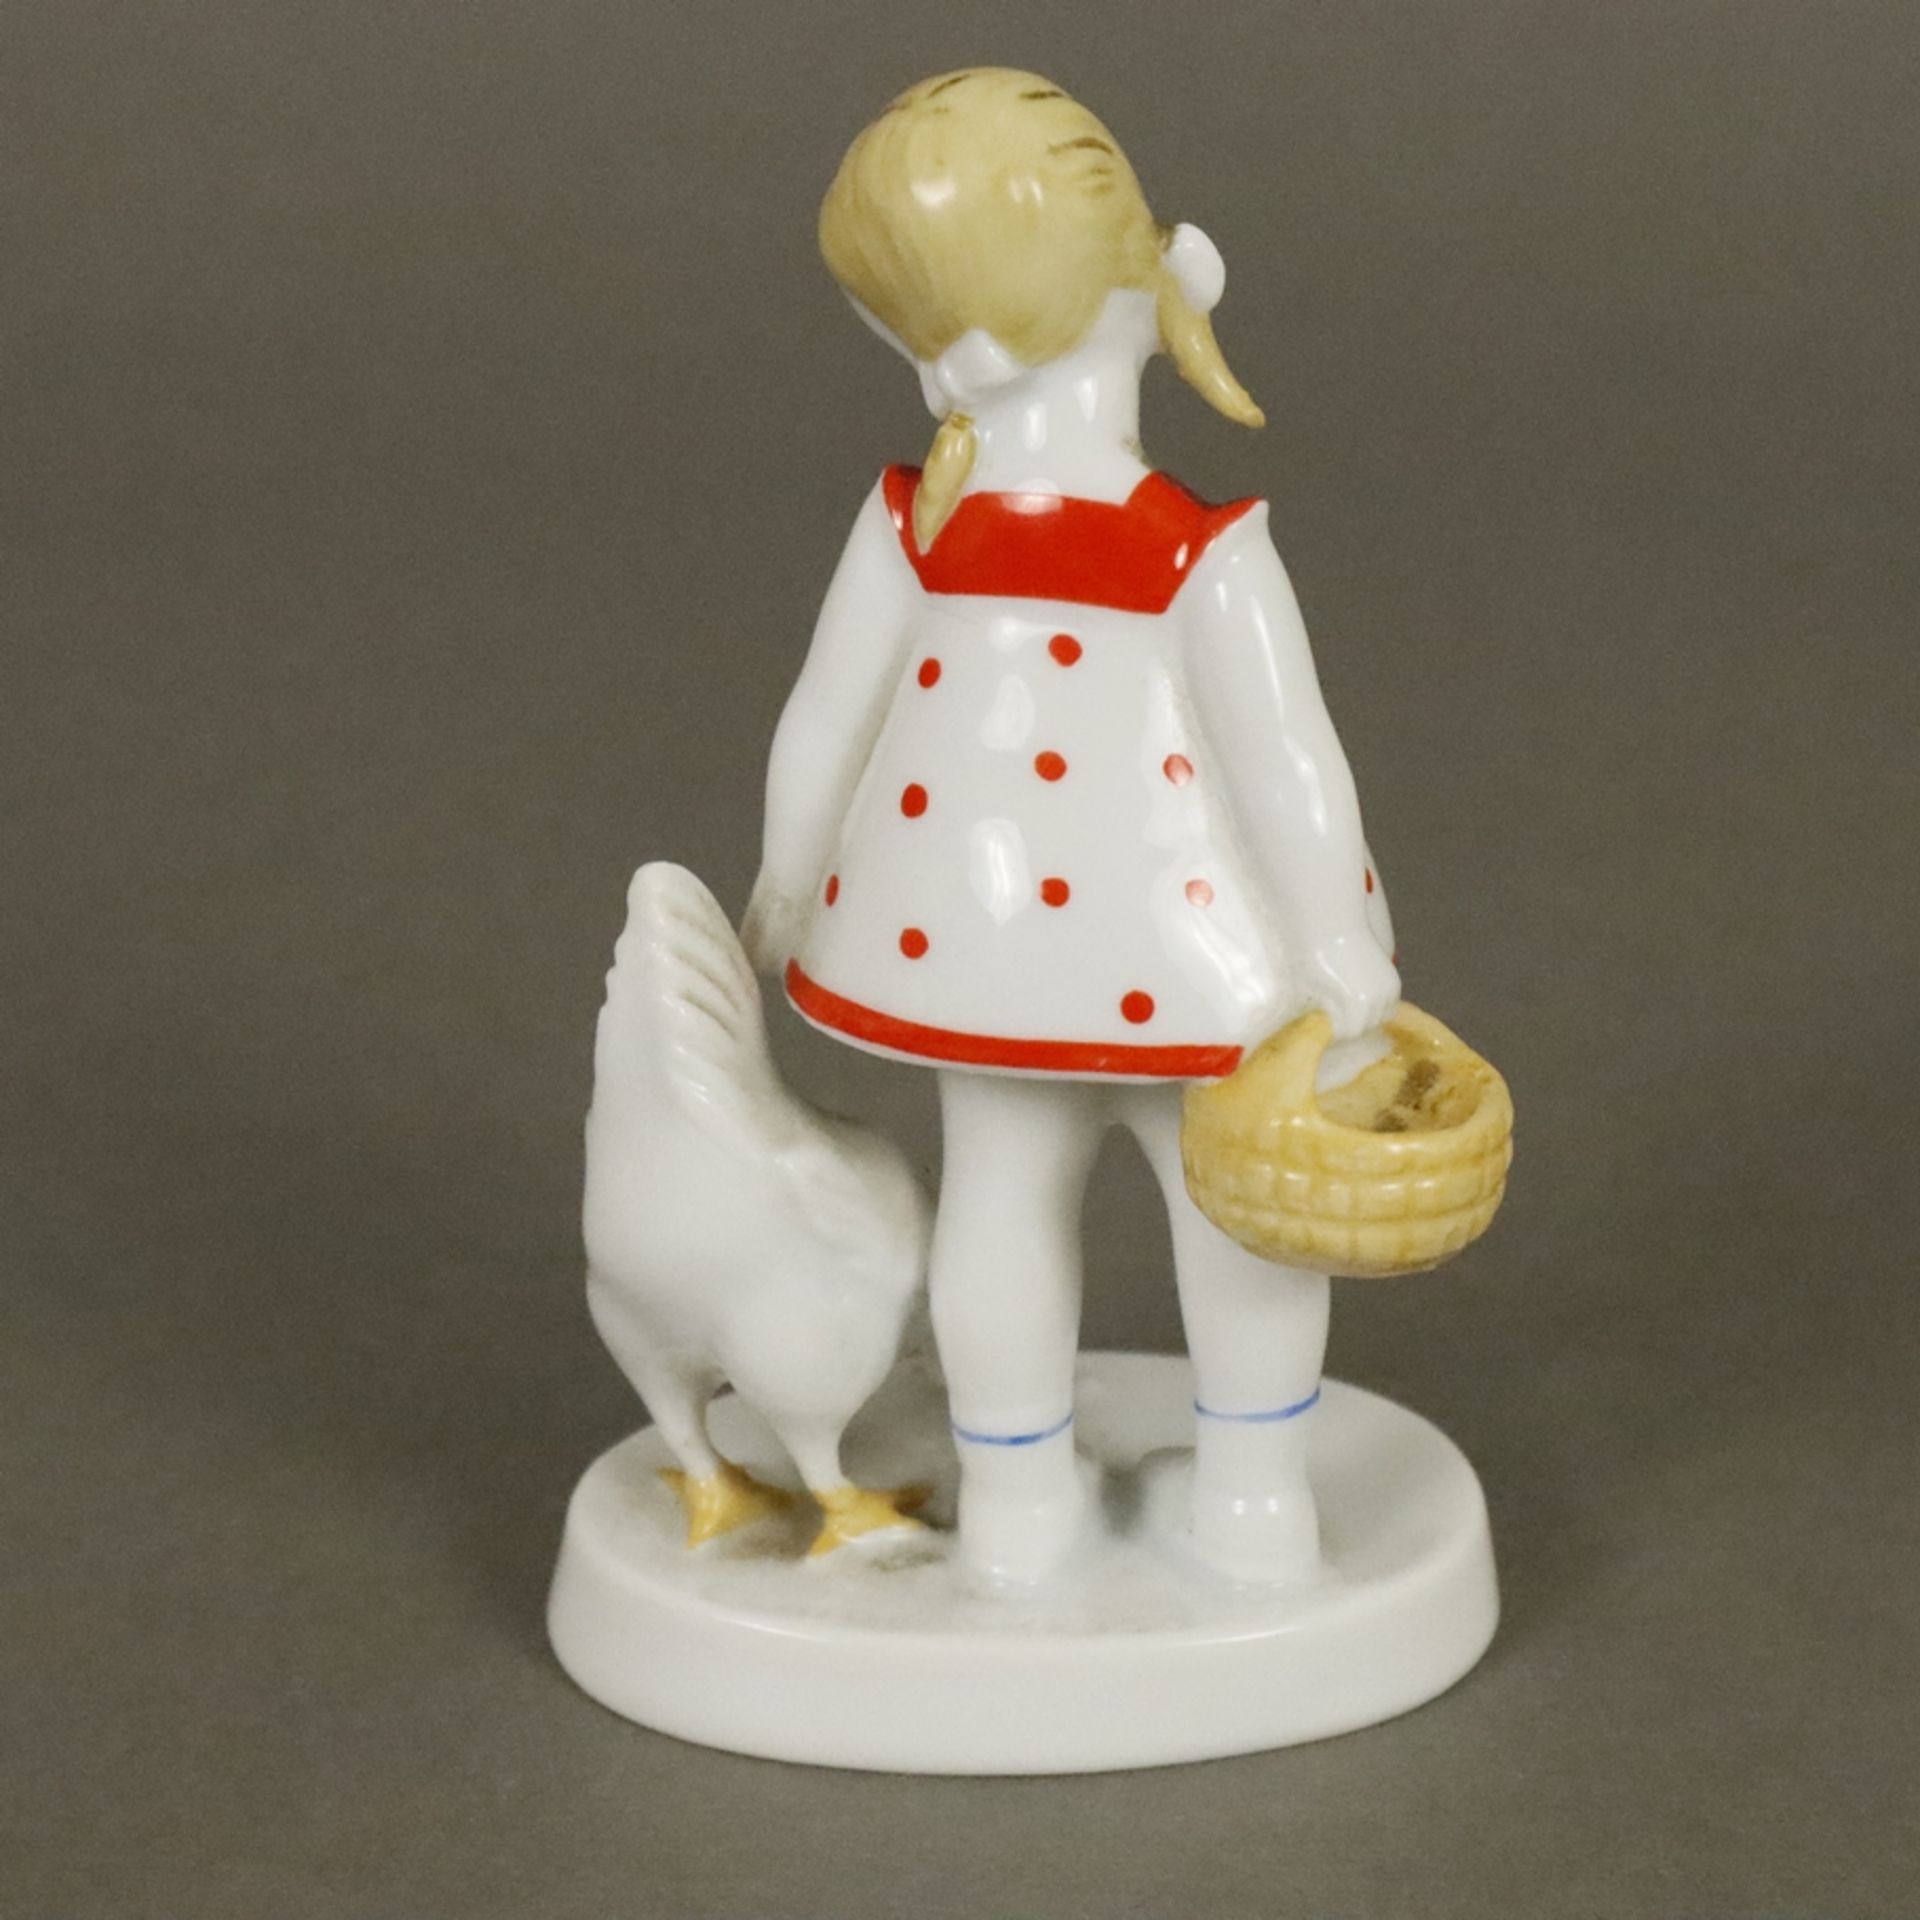 Seltene Porzellanfigur "Mädchen mit Huhn" - Rosenthal, Kunstabteilung Selb, 1930er Jahre, Porzellan - Bild 5 aus 7